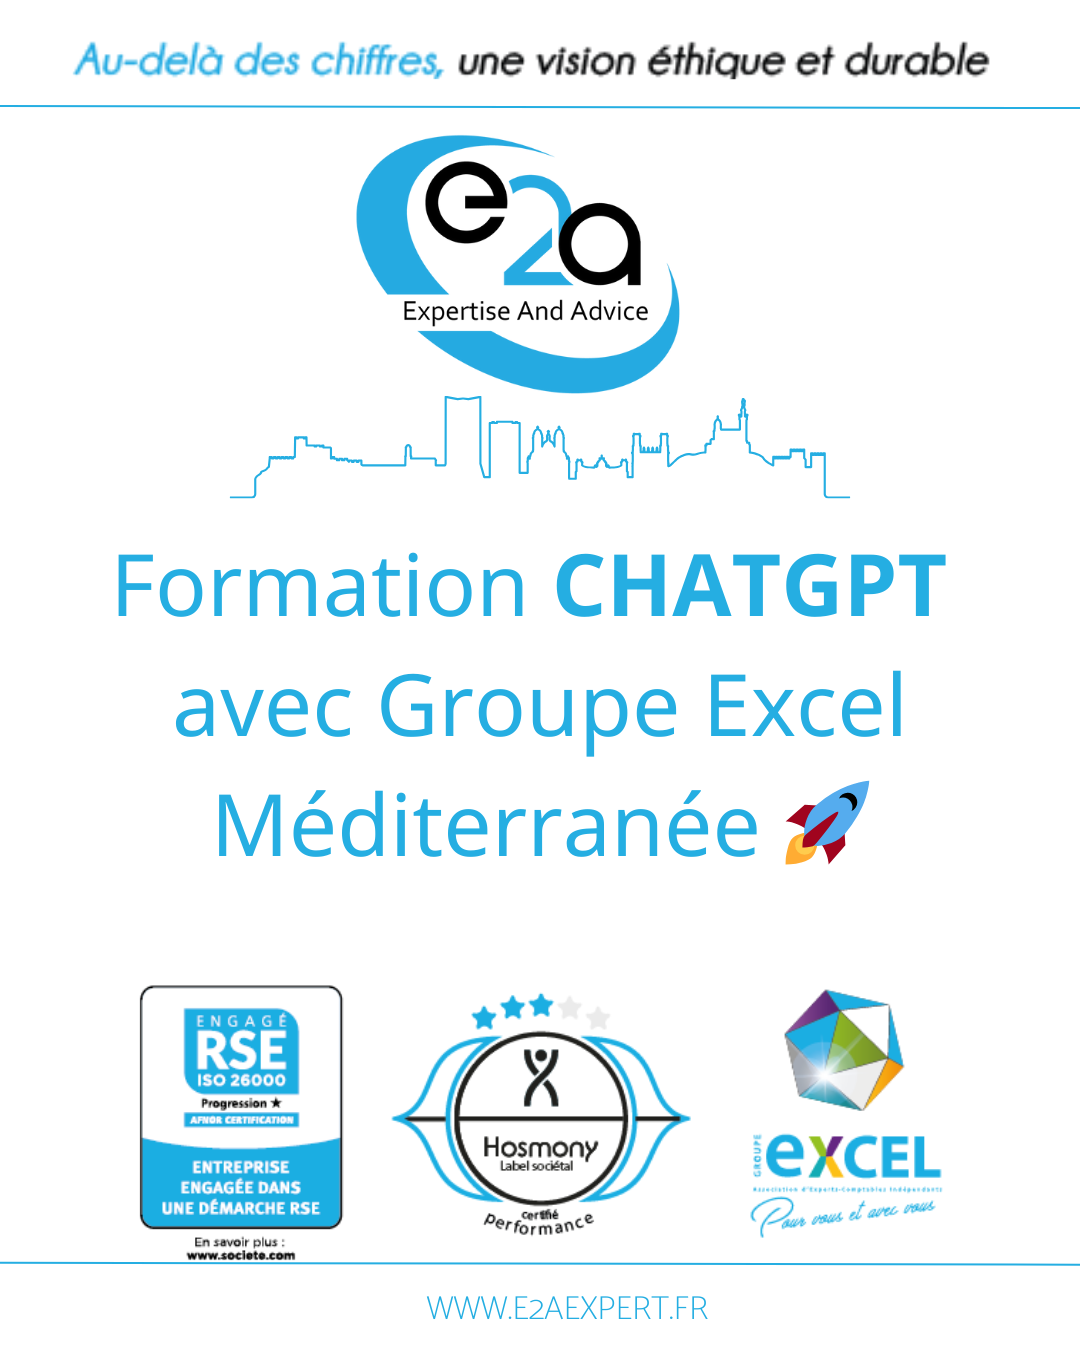 ChatGPT : Une Révolution chez E2A Expert et le Groupe Excel Méditerranée🌟